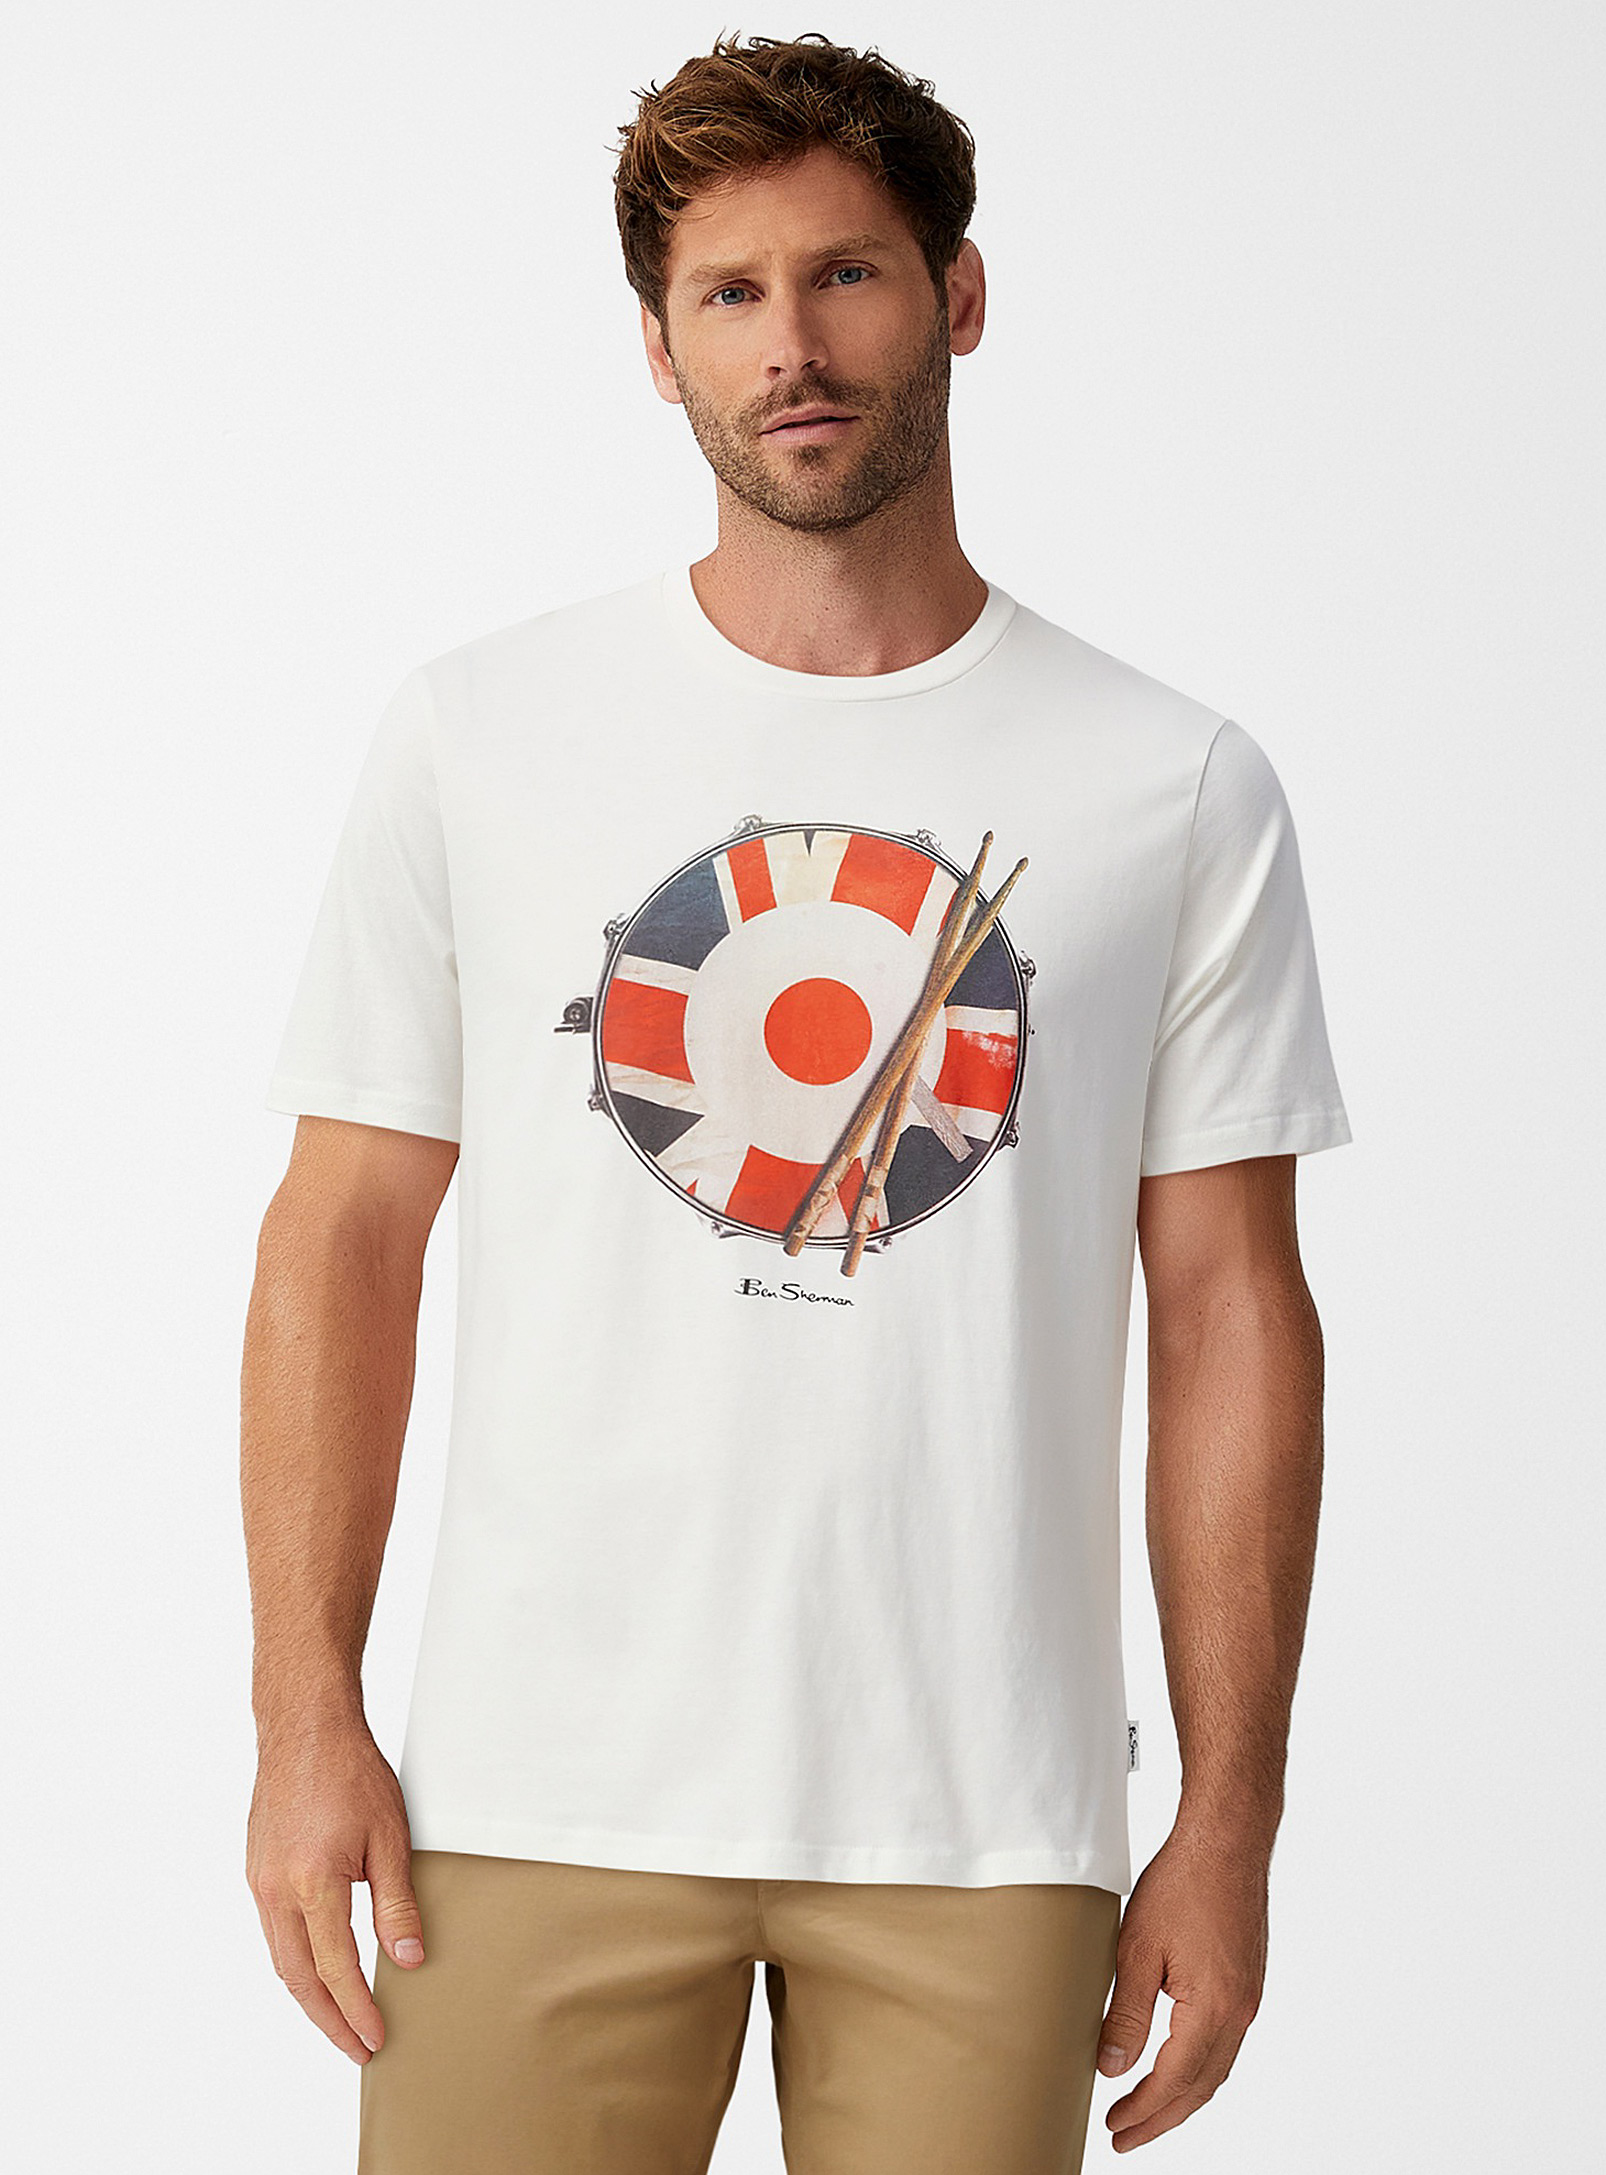 Ben Sherman - Le t-shirt tambour britannique